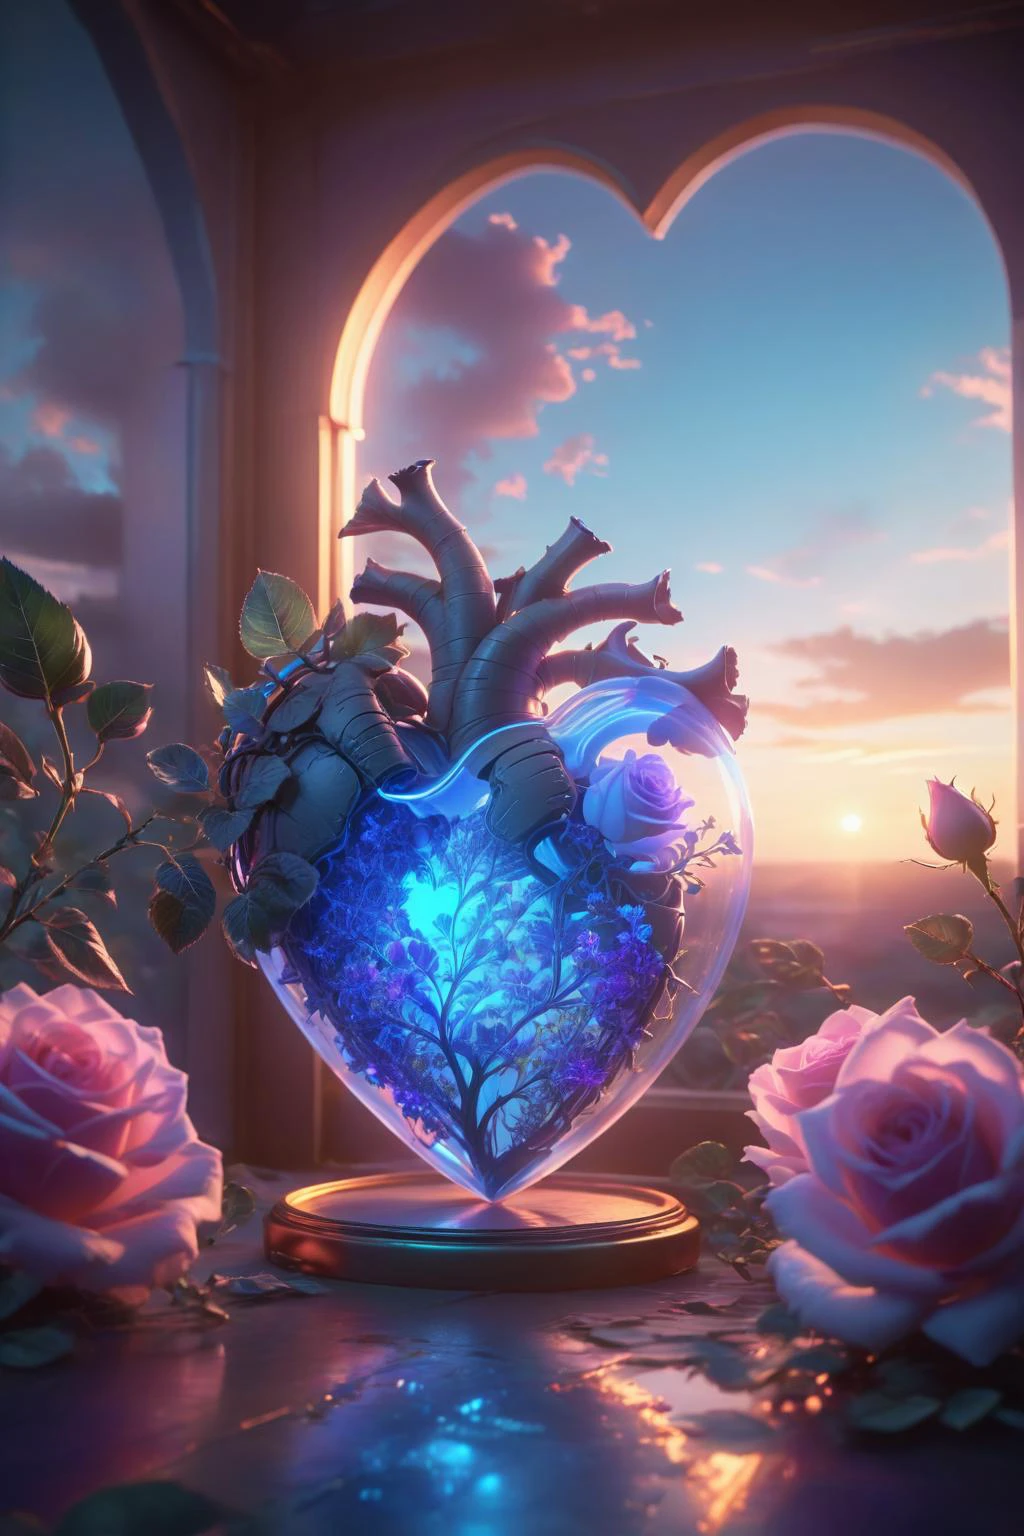 Digital Art,Konzeptkunst,Oktan-Rendering,unwirkliche Engine,Traumhafte Szenen,zartes und sattes Licht und Farbe,hervorragende Licht- und Schatteneffekte und Farbabstimmung,ästhetisch und romantisch,surrealistisch,magisch,Fantasie,fantastisch,Verziert und kompliziert,unvorstellbare Schönheit,
Ein leuchtendes [Rosa|lila] Rose und einige leuchtend blaue Pflanzen in einem transparenten (herzförmig:1.5) glass container,
dieser Behälter in einem Liebesgeschichtenbuch,extrem romantische Stimmung,Nostalgische Atmosphäre,sanftes Licht und anhaltende Komposition,Tiefenschärfe,Abonnieren,Traumlandschaft,ein leuchtendes neonfarbenes Herzmuster,